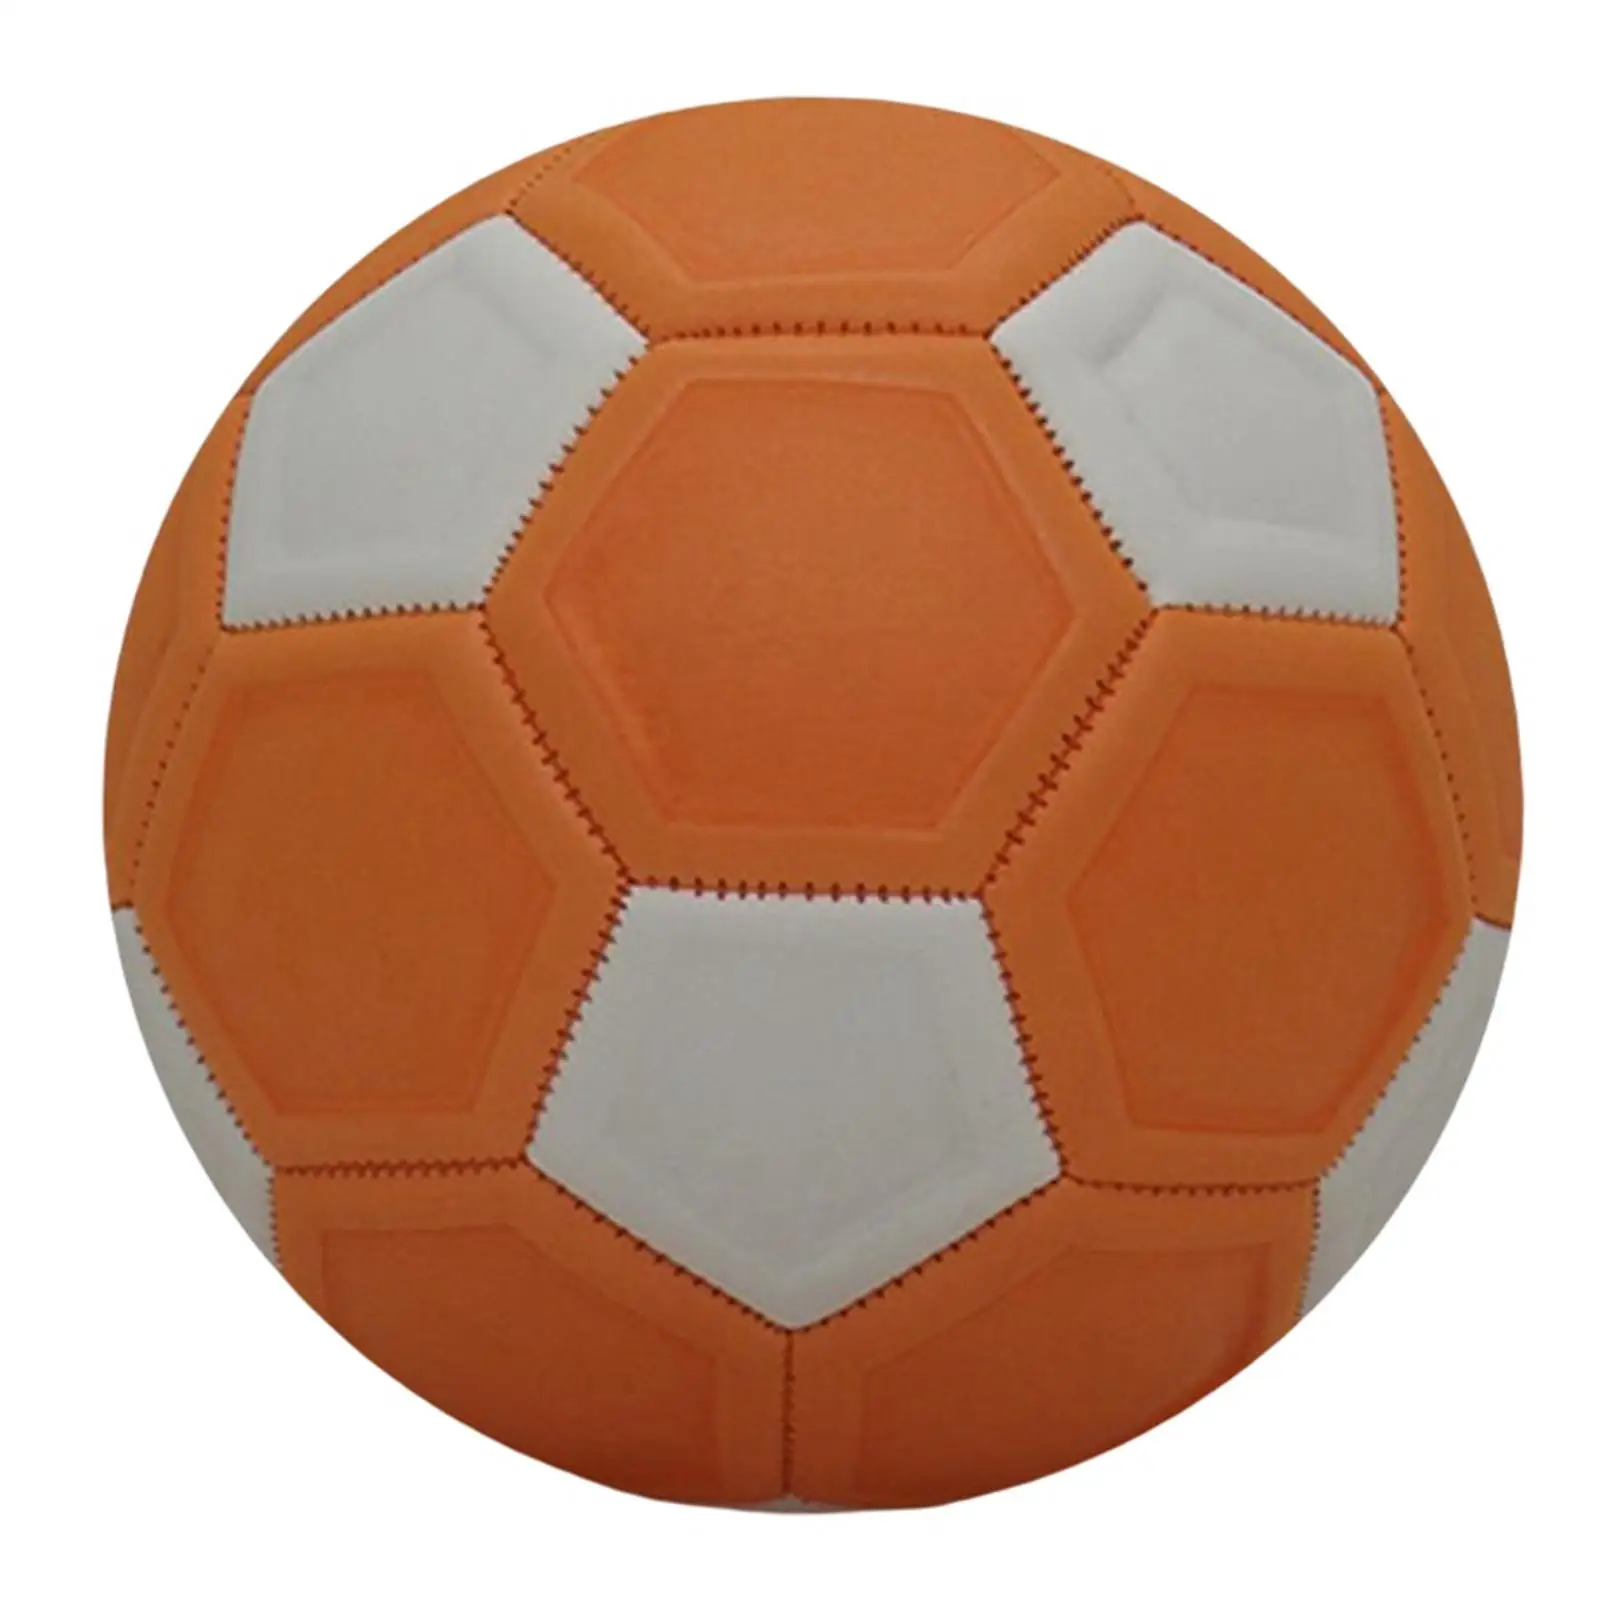 

Футбольный мяч, размер 4, официальный мяч для тренировок малышей, детей, молодежи